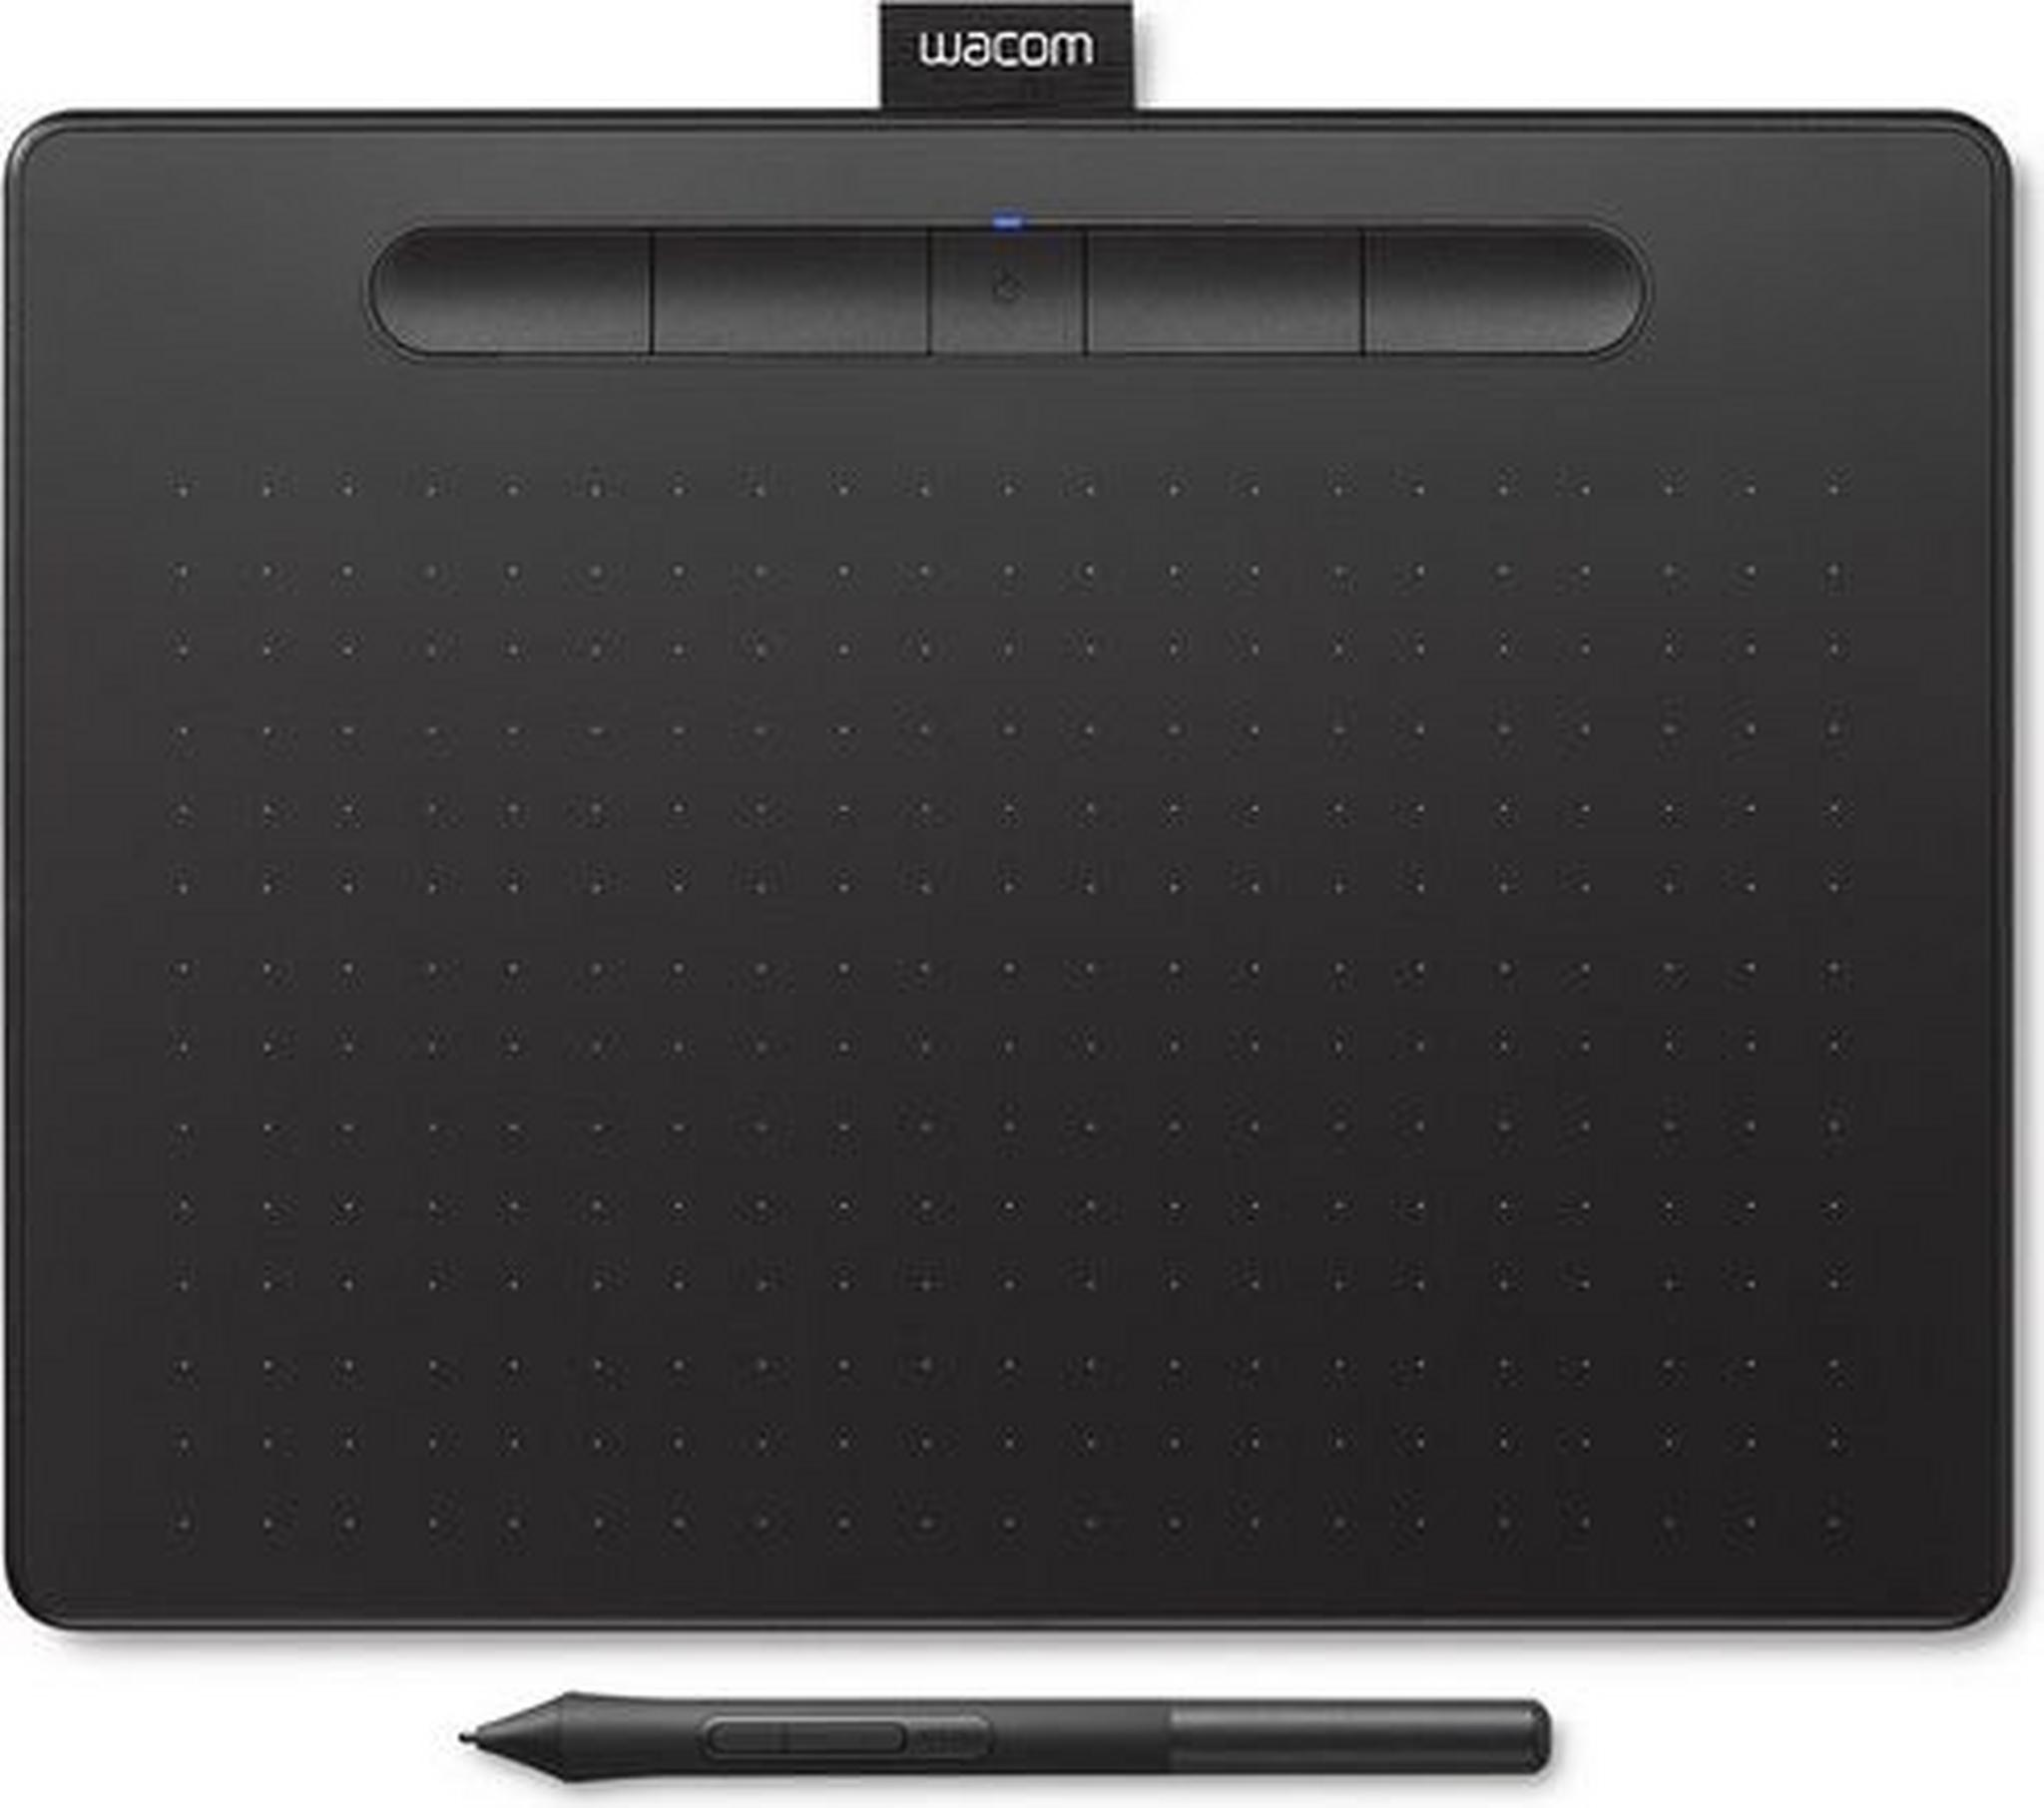 تابلت الرسم الإبداعي واكوم إنتوس بتقنية البلوتوث مع قلم رسم - (صغير) - أسود (CTL-6100WLK)